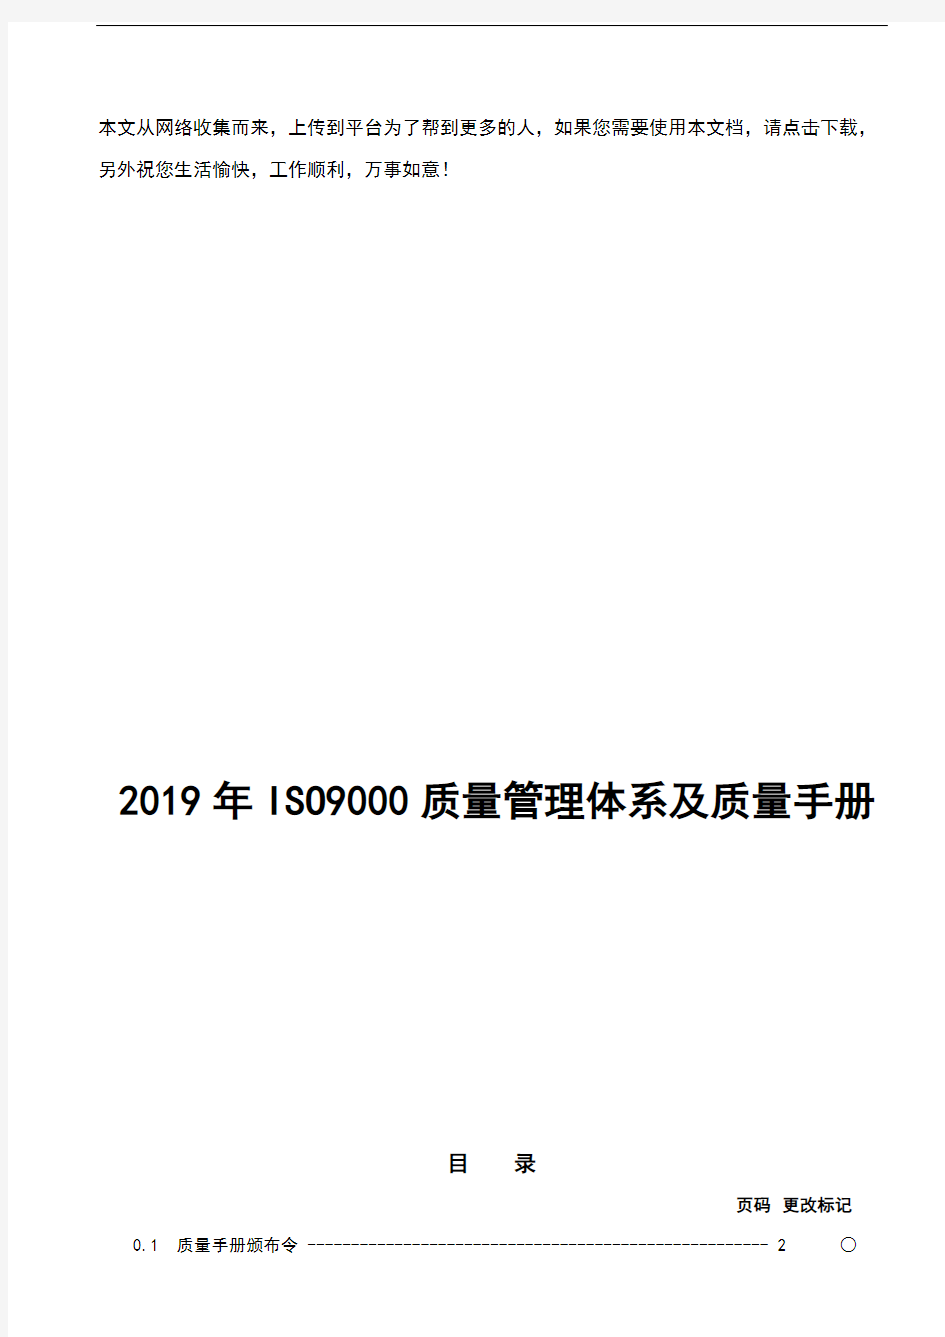 2019年ISO9000质量管理体系及质量手册